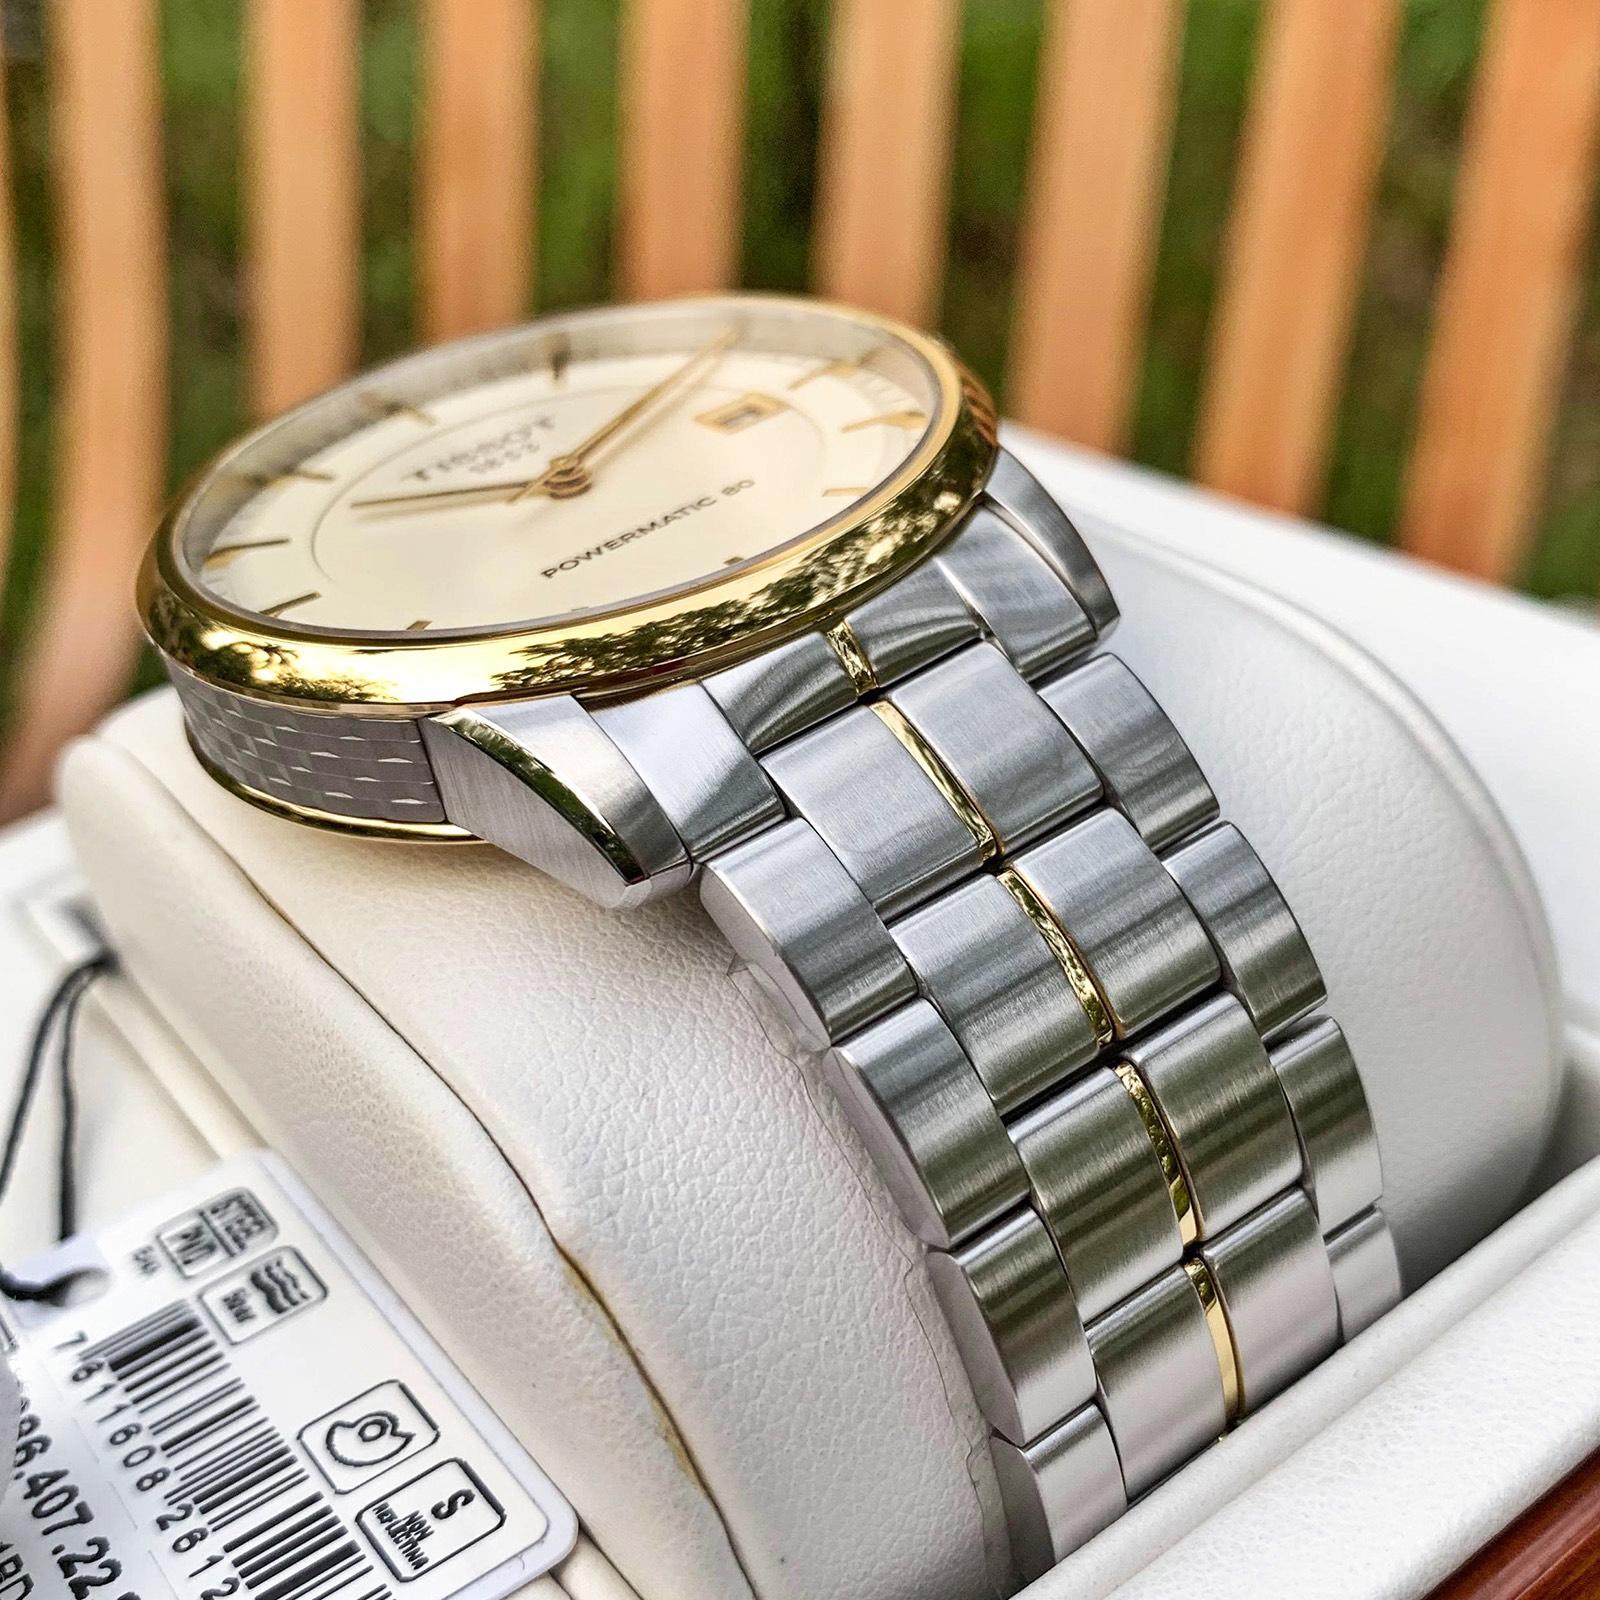 Đồng hồ Tiss0t Luxury Ivory Demi Gold power 80 T086.407.22.261.00: Sự kết hợp tinh tế giữa cổ điển và hiện đại